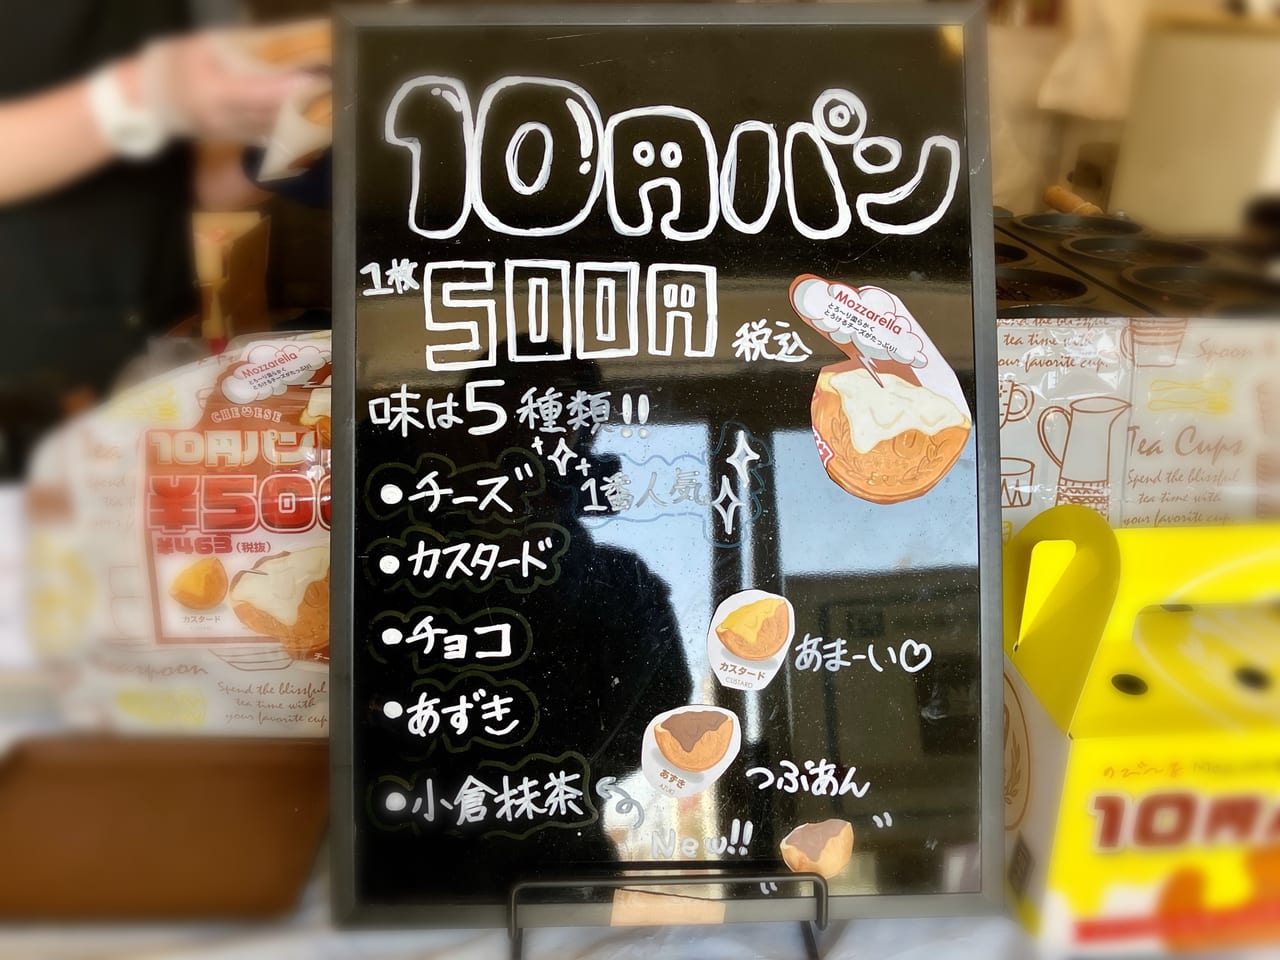 韓国発祥の人気スイーツ「10円パン」が 東区でも食べられるお店がありました。